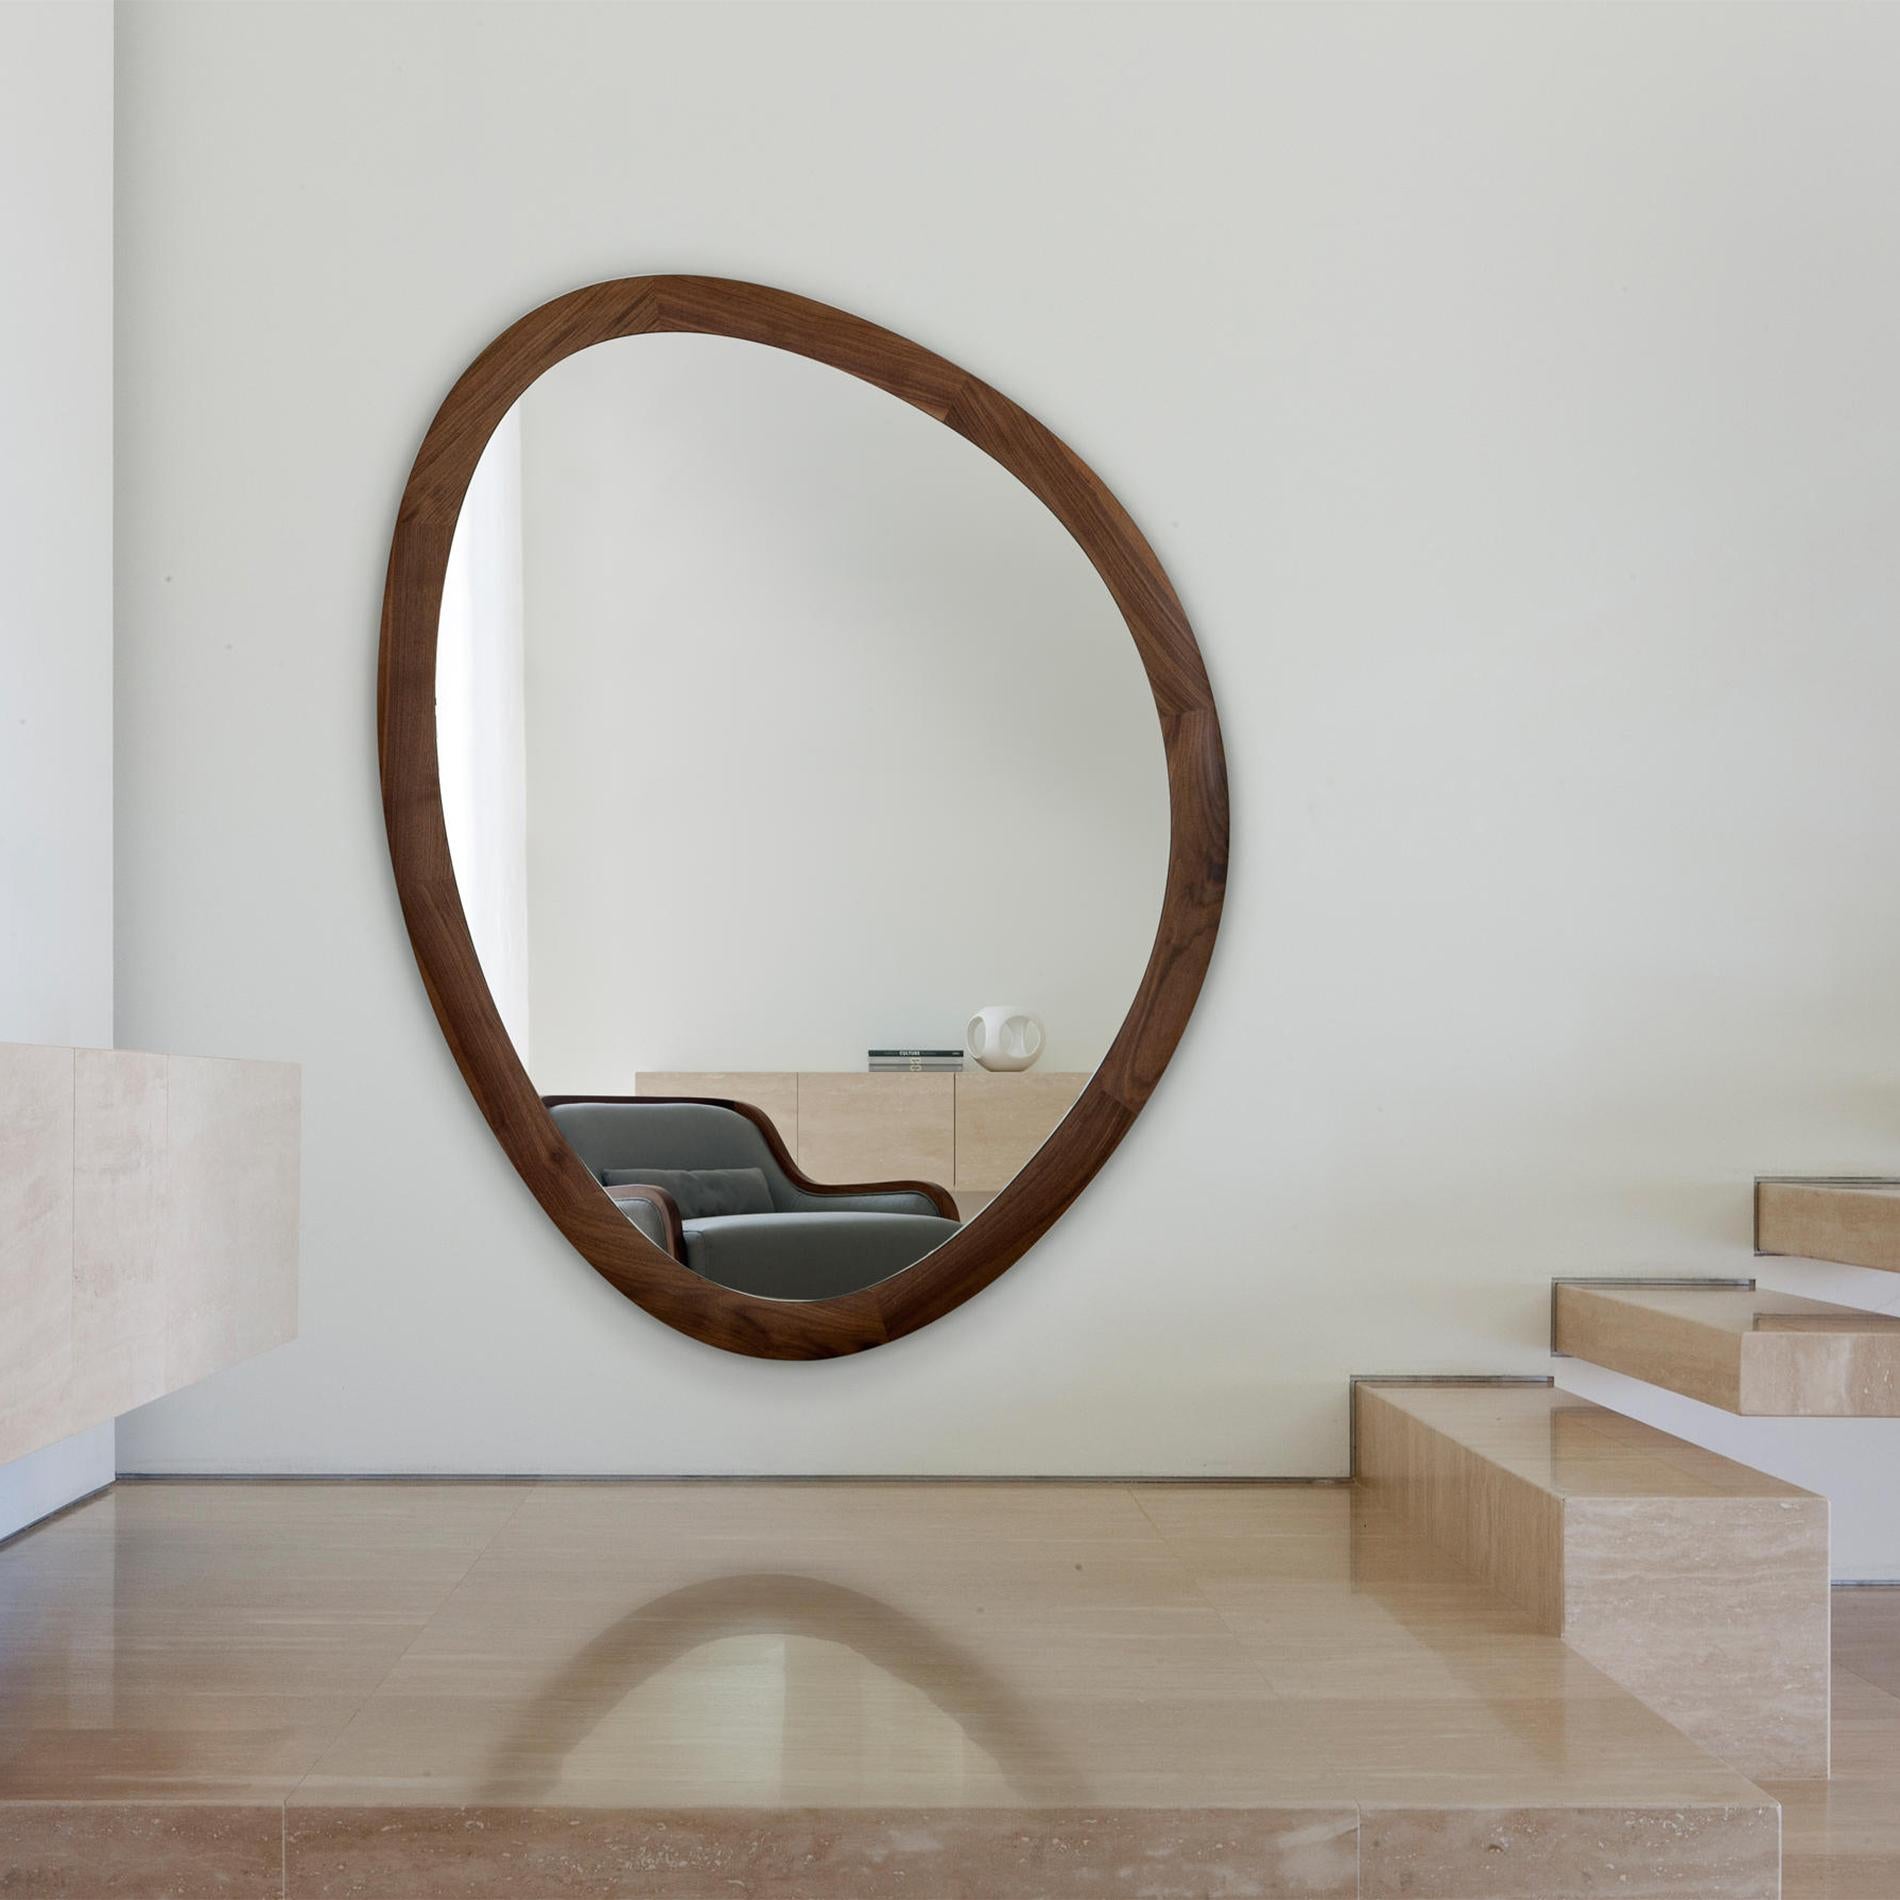 Spiegel Mandel mit Rahmen aus massivem Walnussholz. 
Mit klarem Spiegelglas.
Auf Anfrage auch erhältlich in:
L76xT03xH100cm, Preis: 3900,00€.